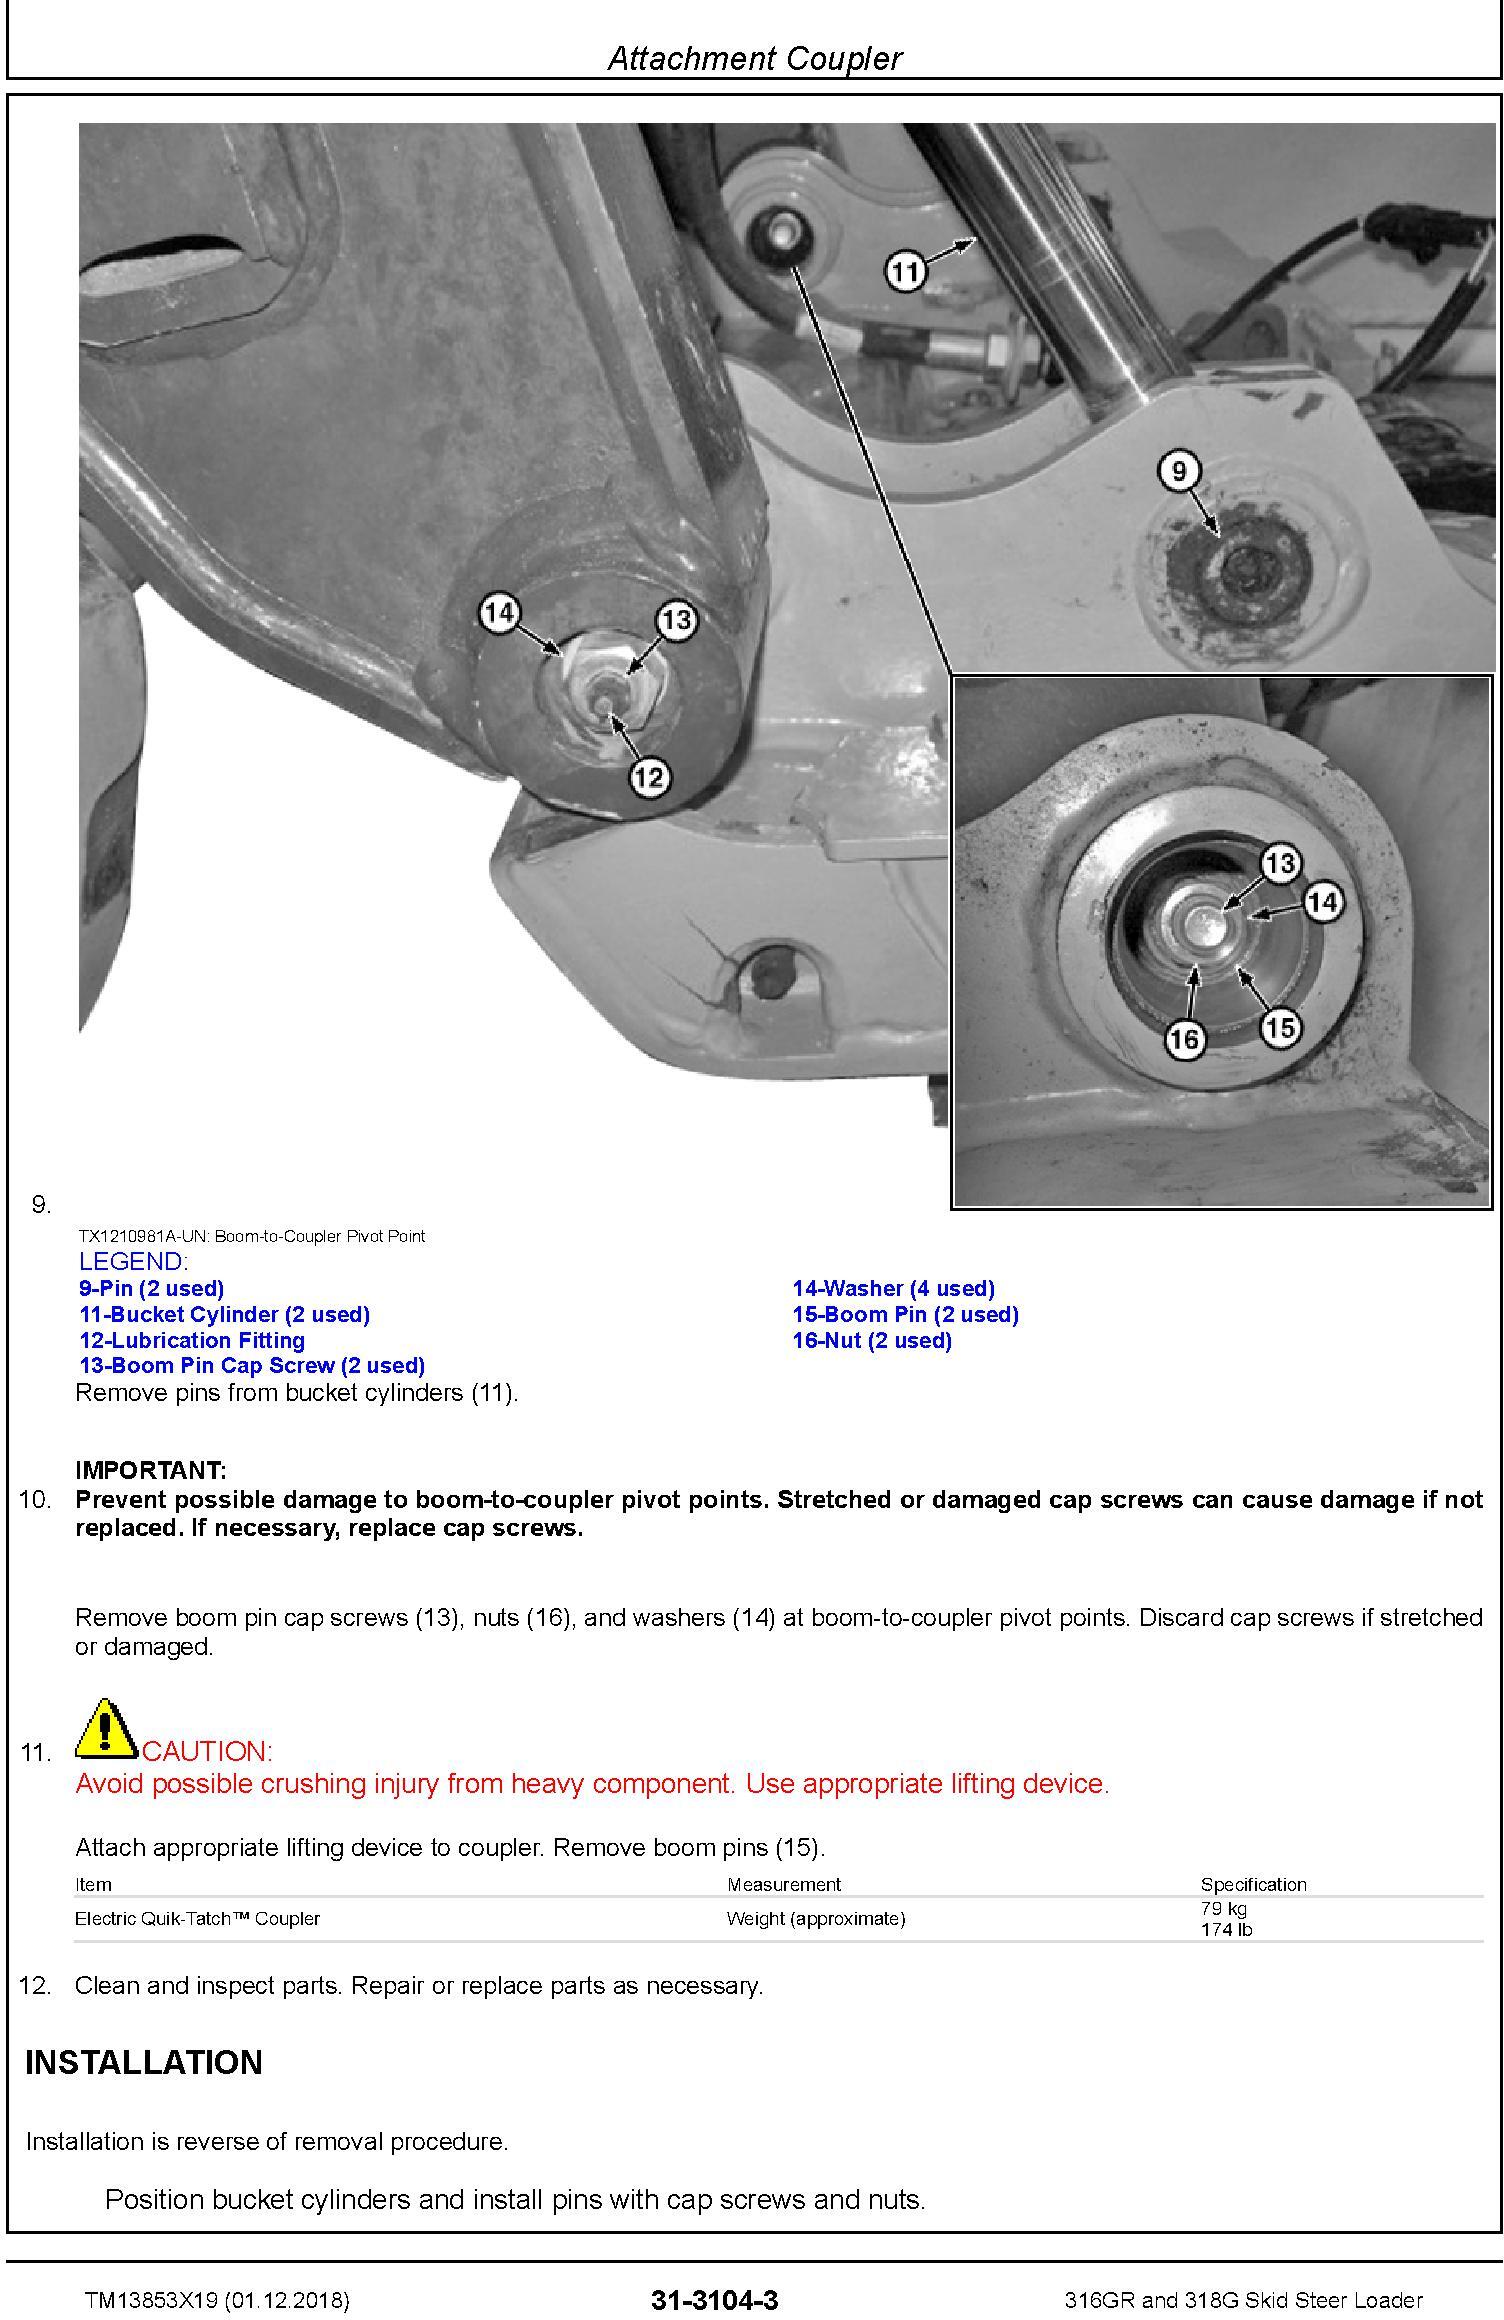 John Deere 316GR and 318G Skid Steer Loader Service Repair Manual (TM13853X19) - 2